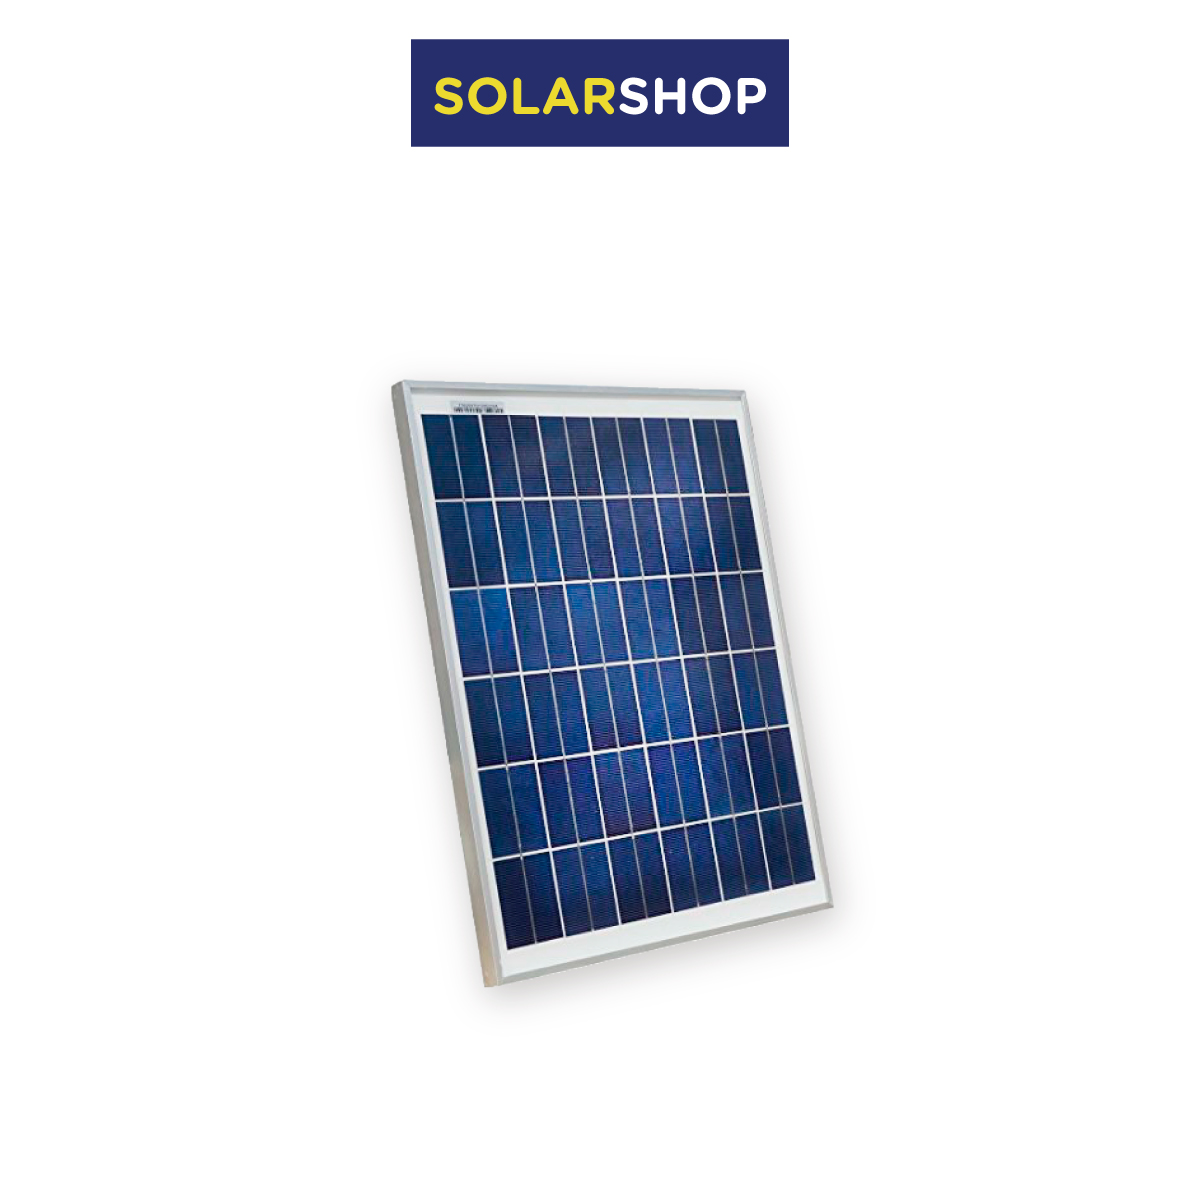 https://www.fluxtienda.com/shared/panel-solar-150-vatios-monocristalino-8878fb72-6307-0a3a-3b8b-5e22eeb184d4.-cuadro-t%C3%A9cnico-panel-solar-150w-solarshop-monocristalino